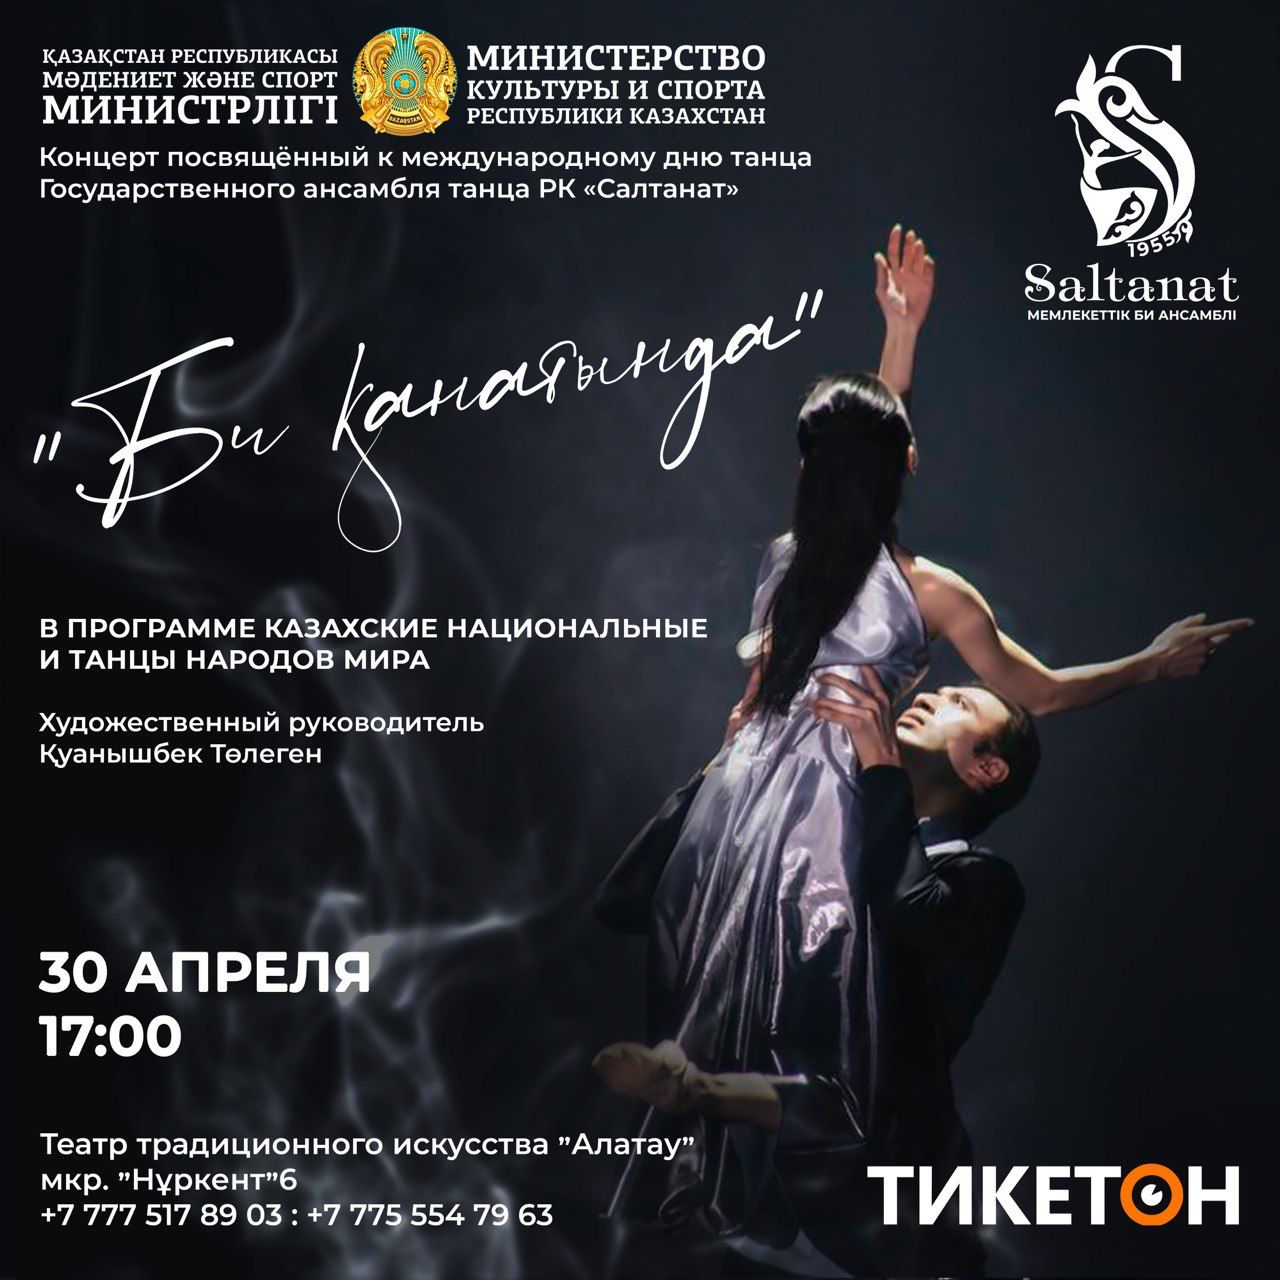 30 апреля в театре традиционного искусства «Алатау» в 17:00